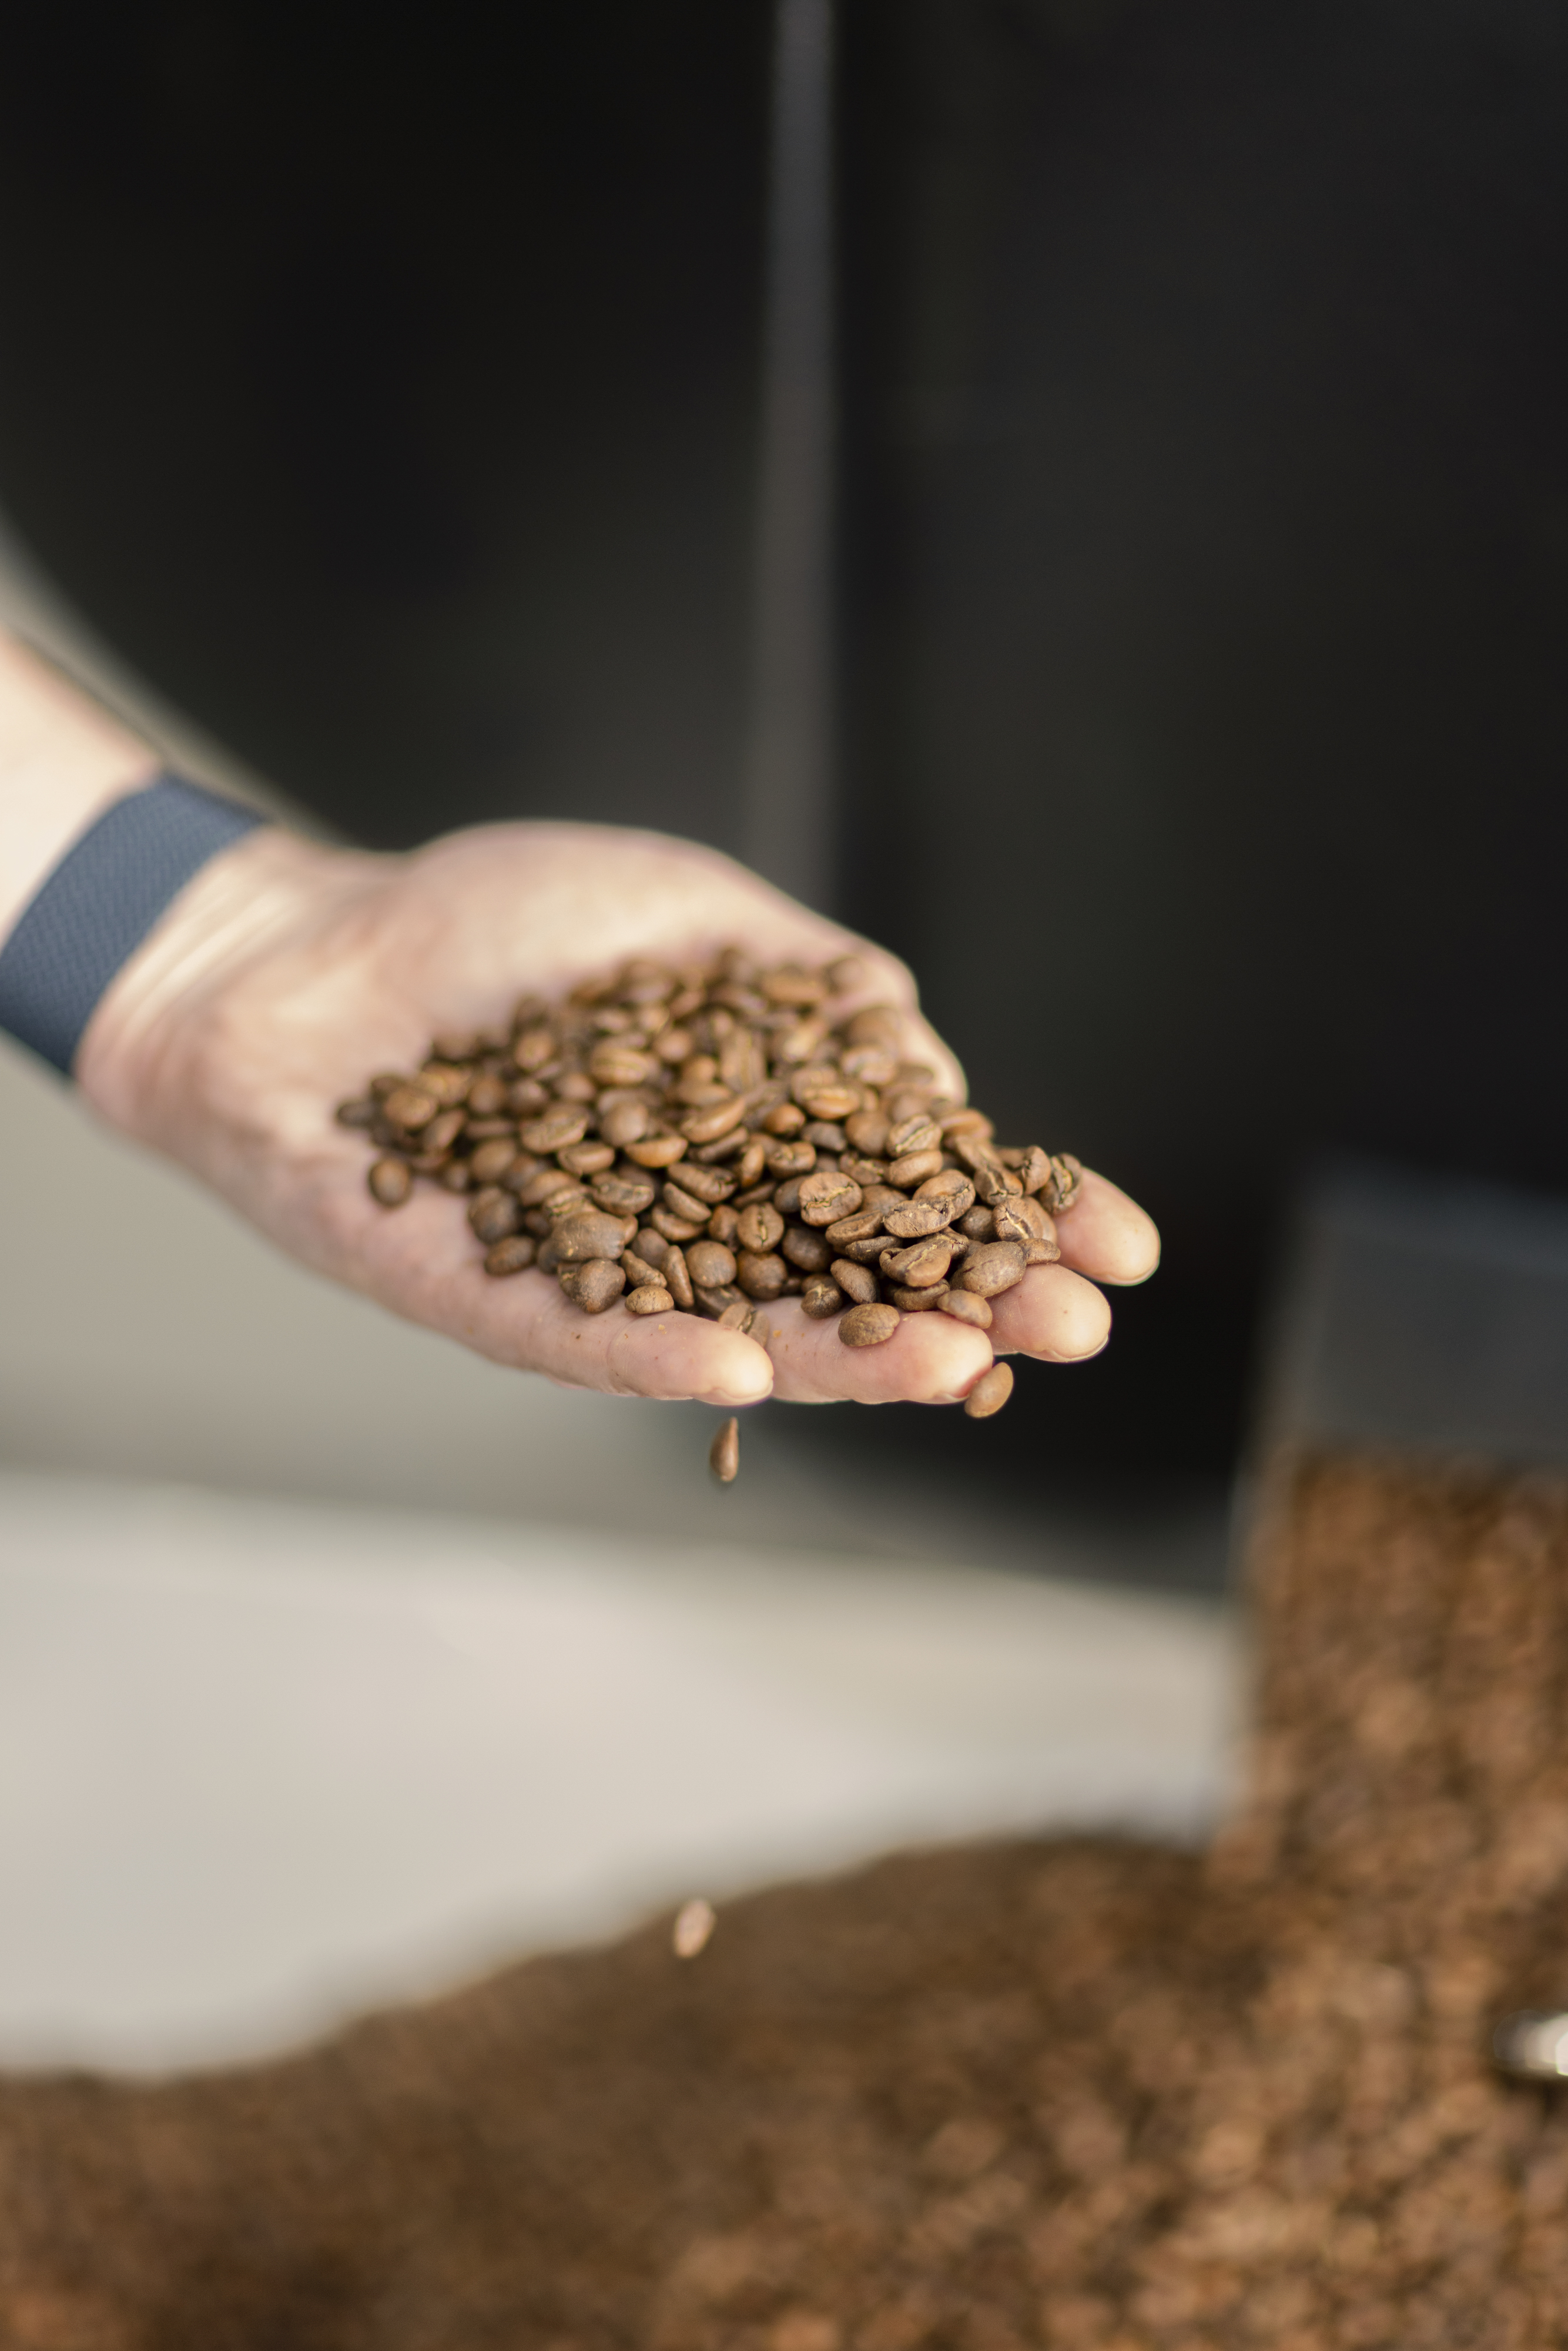 Así es el café perfecto de 2021: del grano a la taza en 30 segundos,  edulcorantes naturales ¡y en casa!